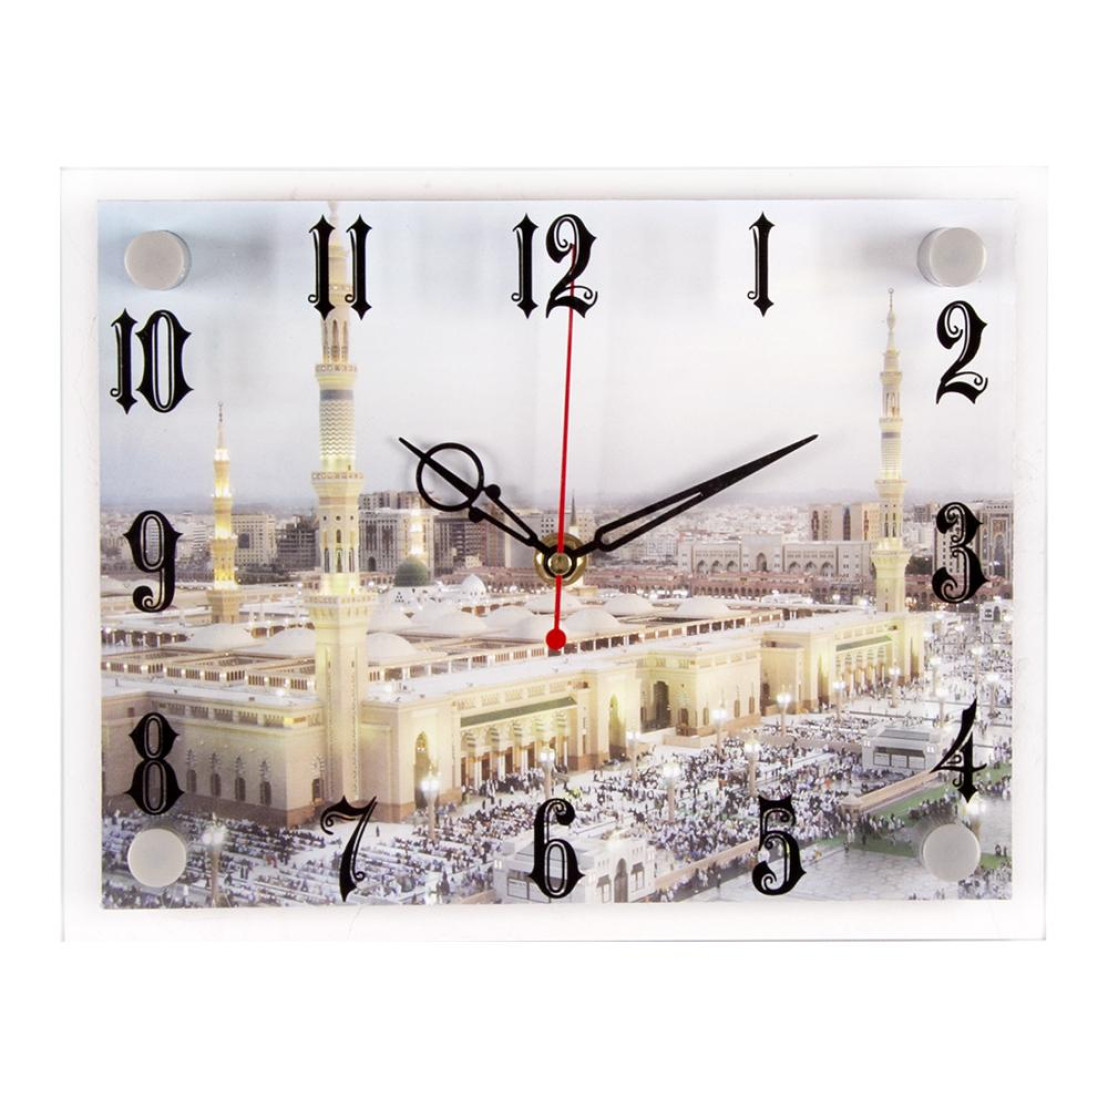 Часы 2026. Часы с мечетью настенные. Оригинал часы настенные для мечети. Настенные электронные часы с мечетью 21 век. 21 Век 2026-995.